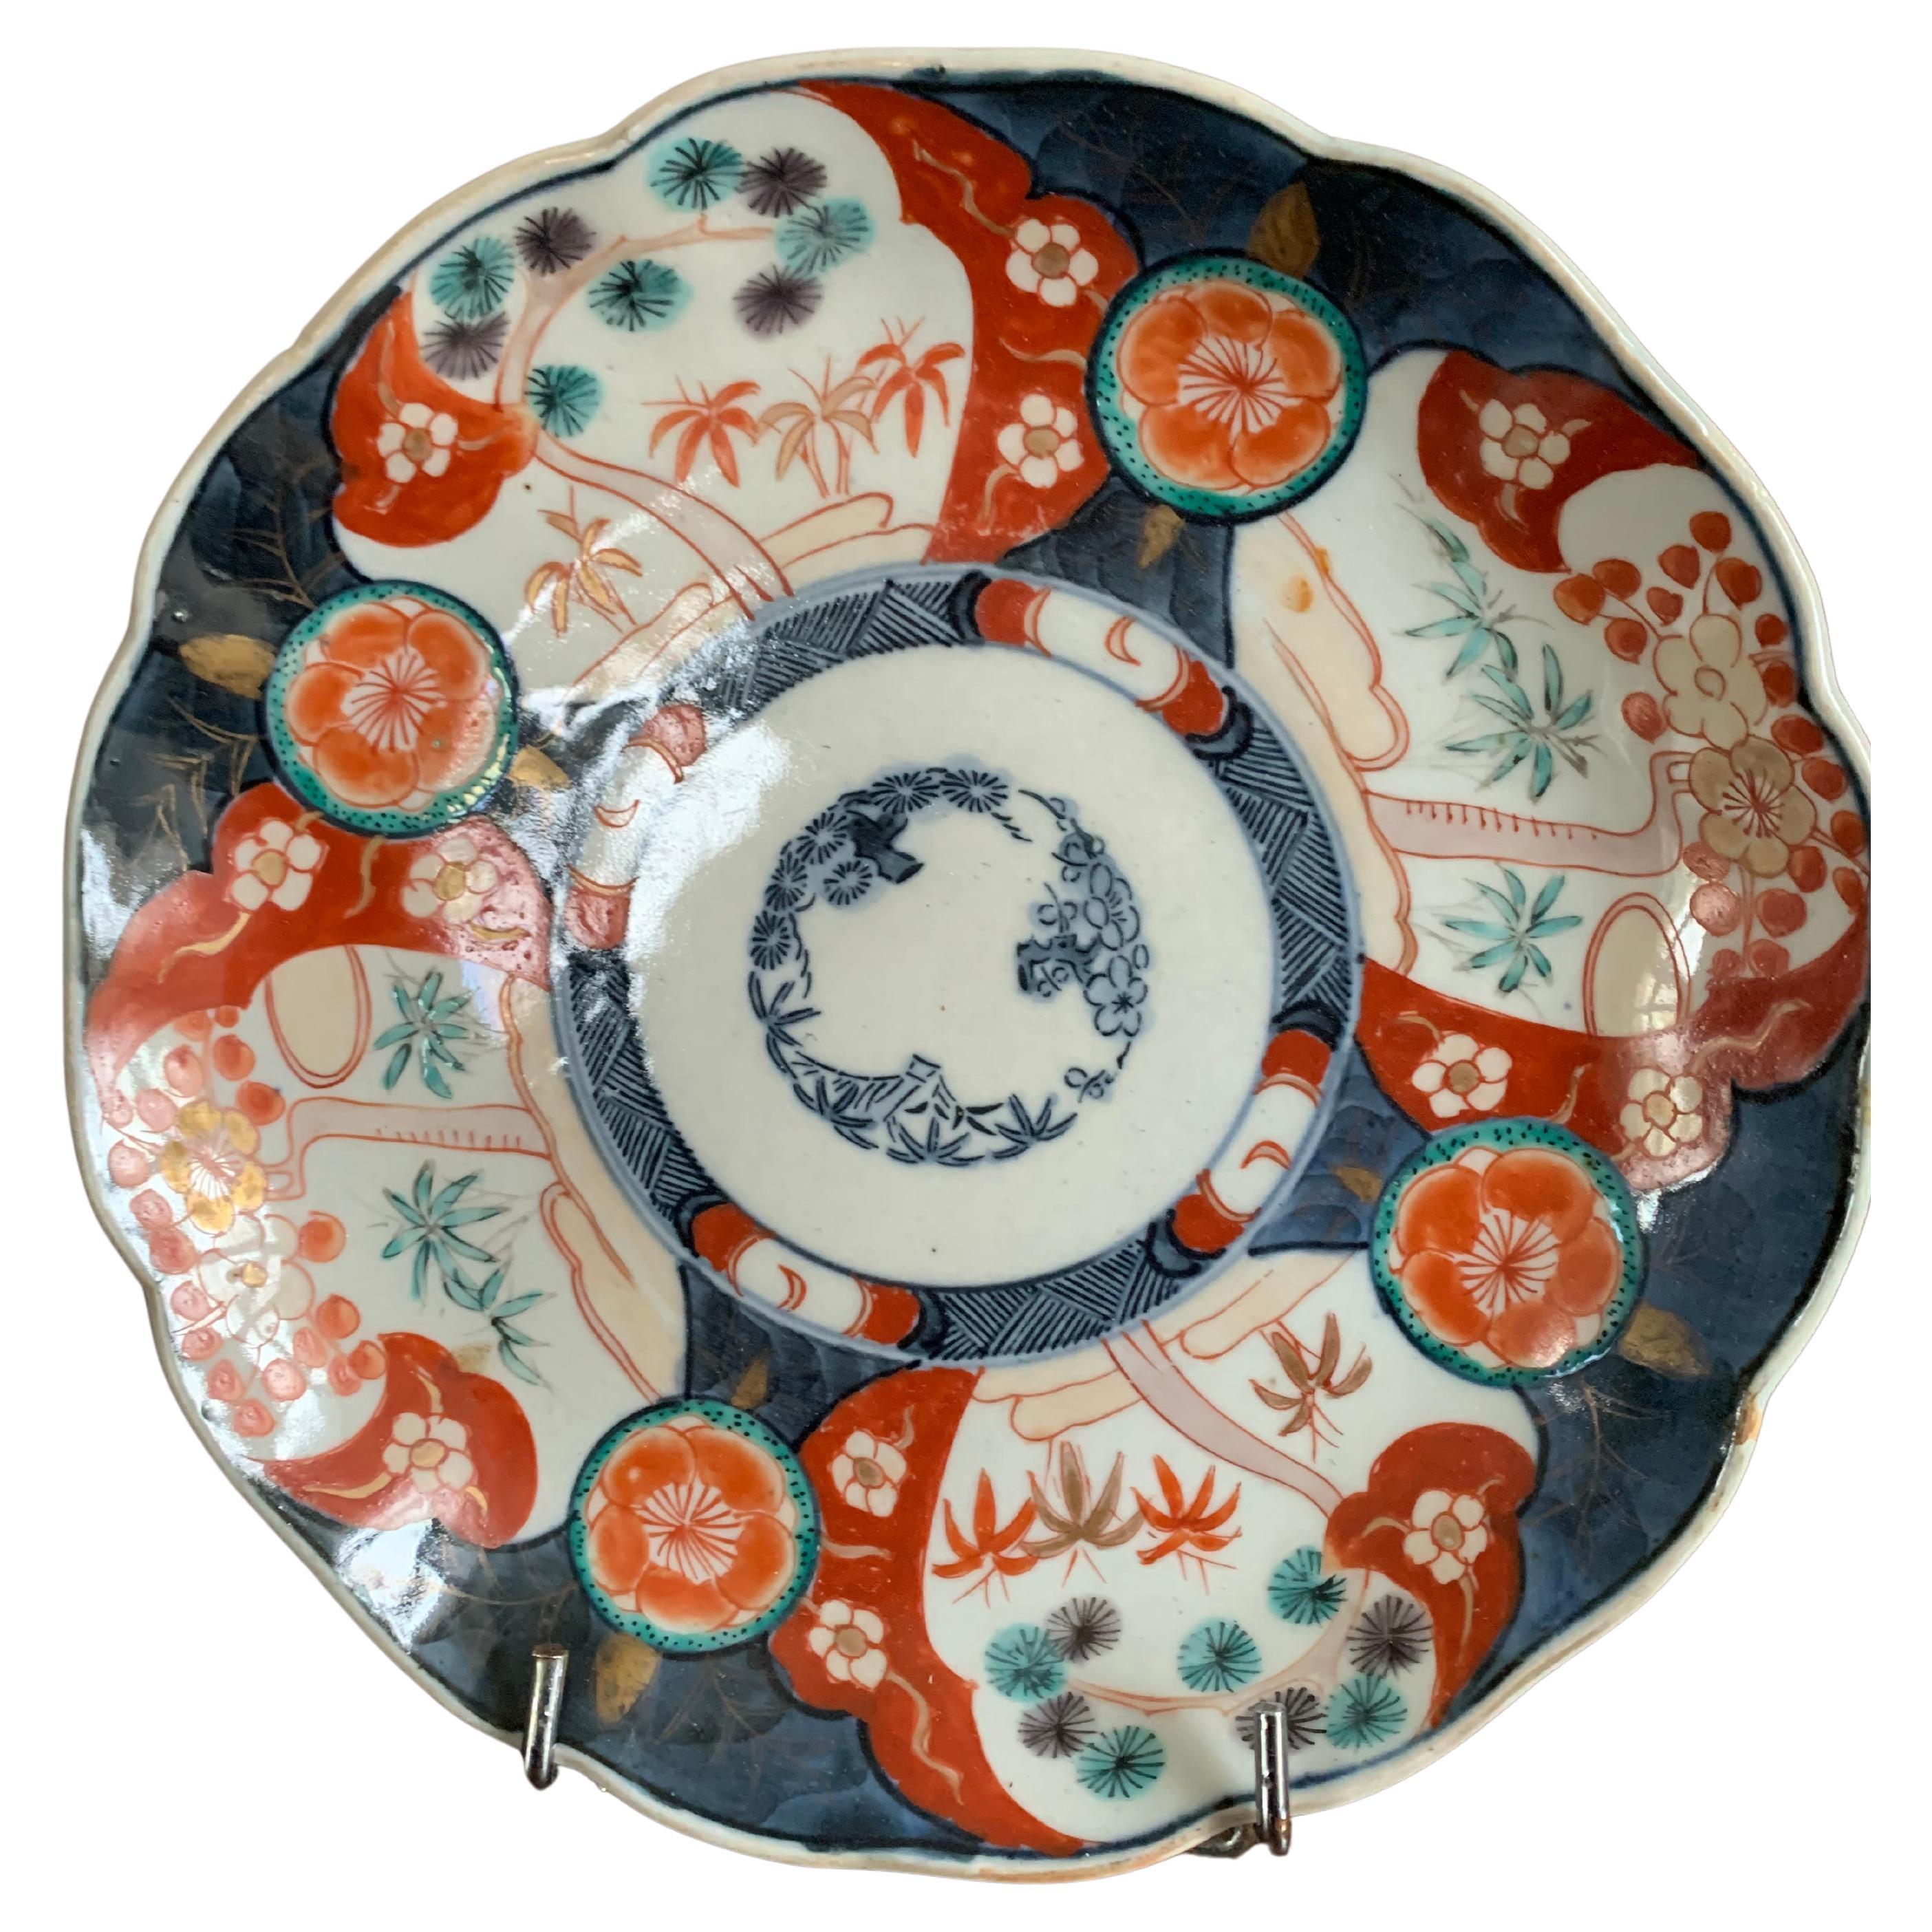 Schöner Porzellanteller mit Imari-Dekor. Auf diesem Teller ist der Hintergrund blau und weiß, mit Reserven, in denen wir rote Blumen und Bambusblätter Muster beobachten können. Imari-Porzellan ist eigentlich eine Produktionsstätte für japanisches